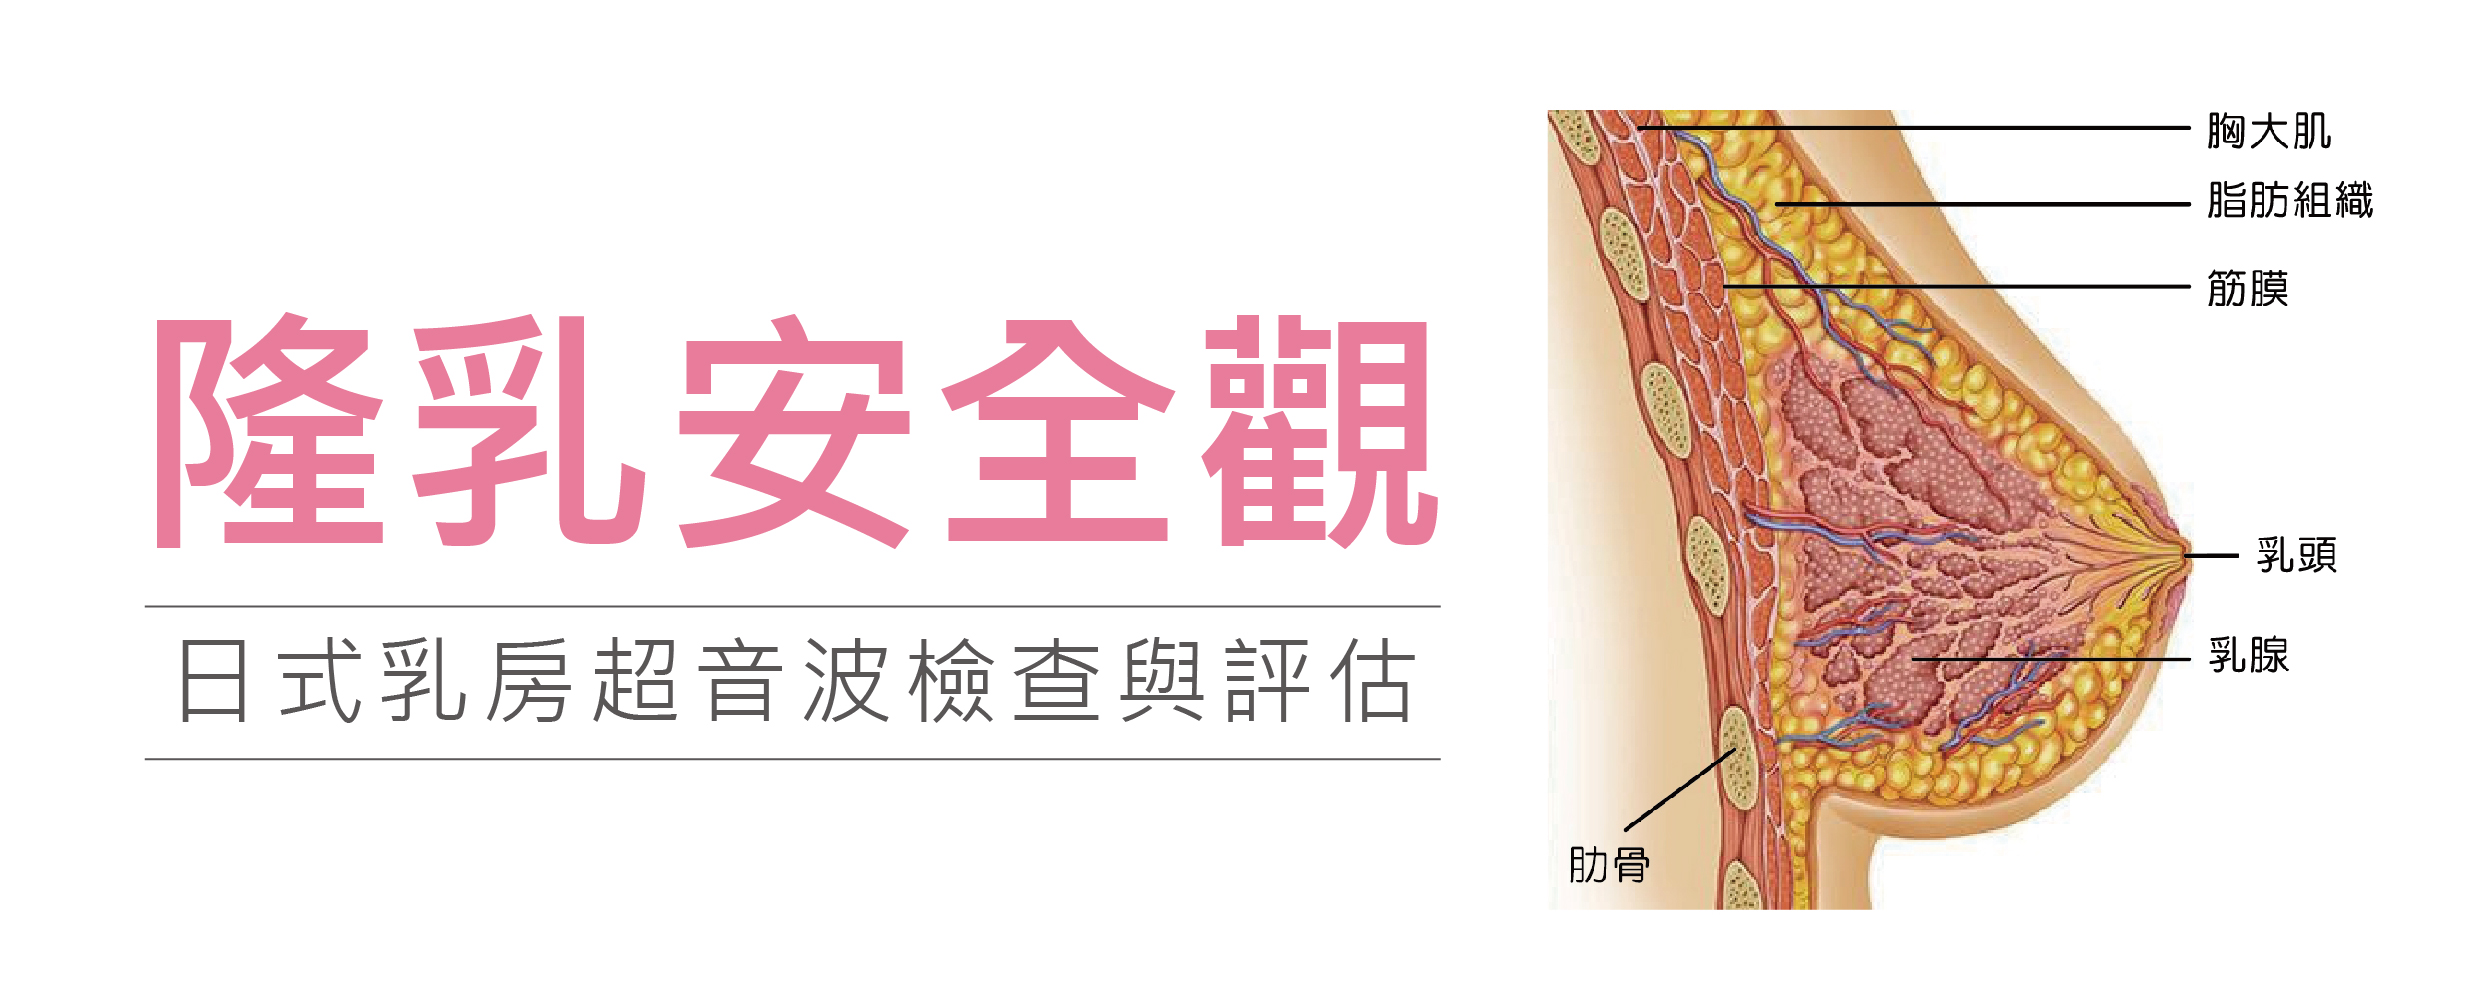 隆乳安全觀 日式乳房超音波檢查與評估-東京風采整形外科診所